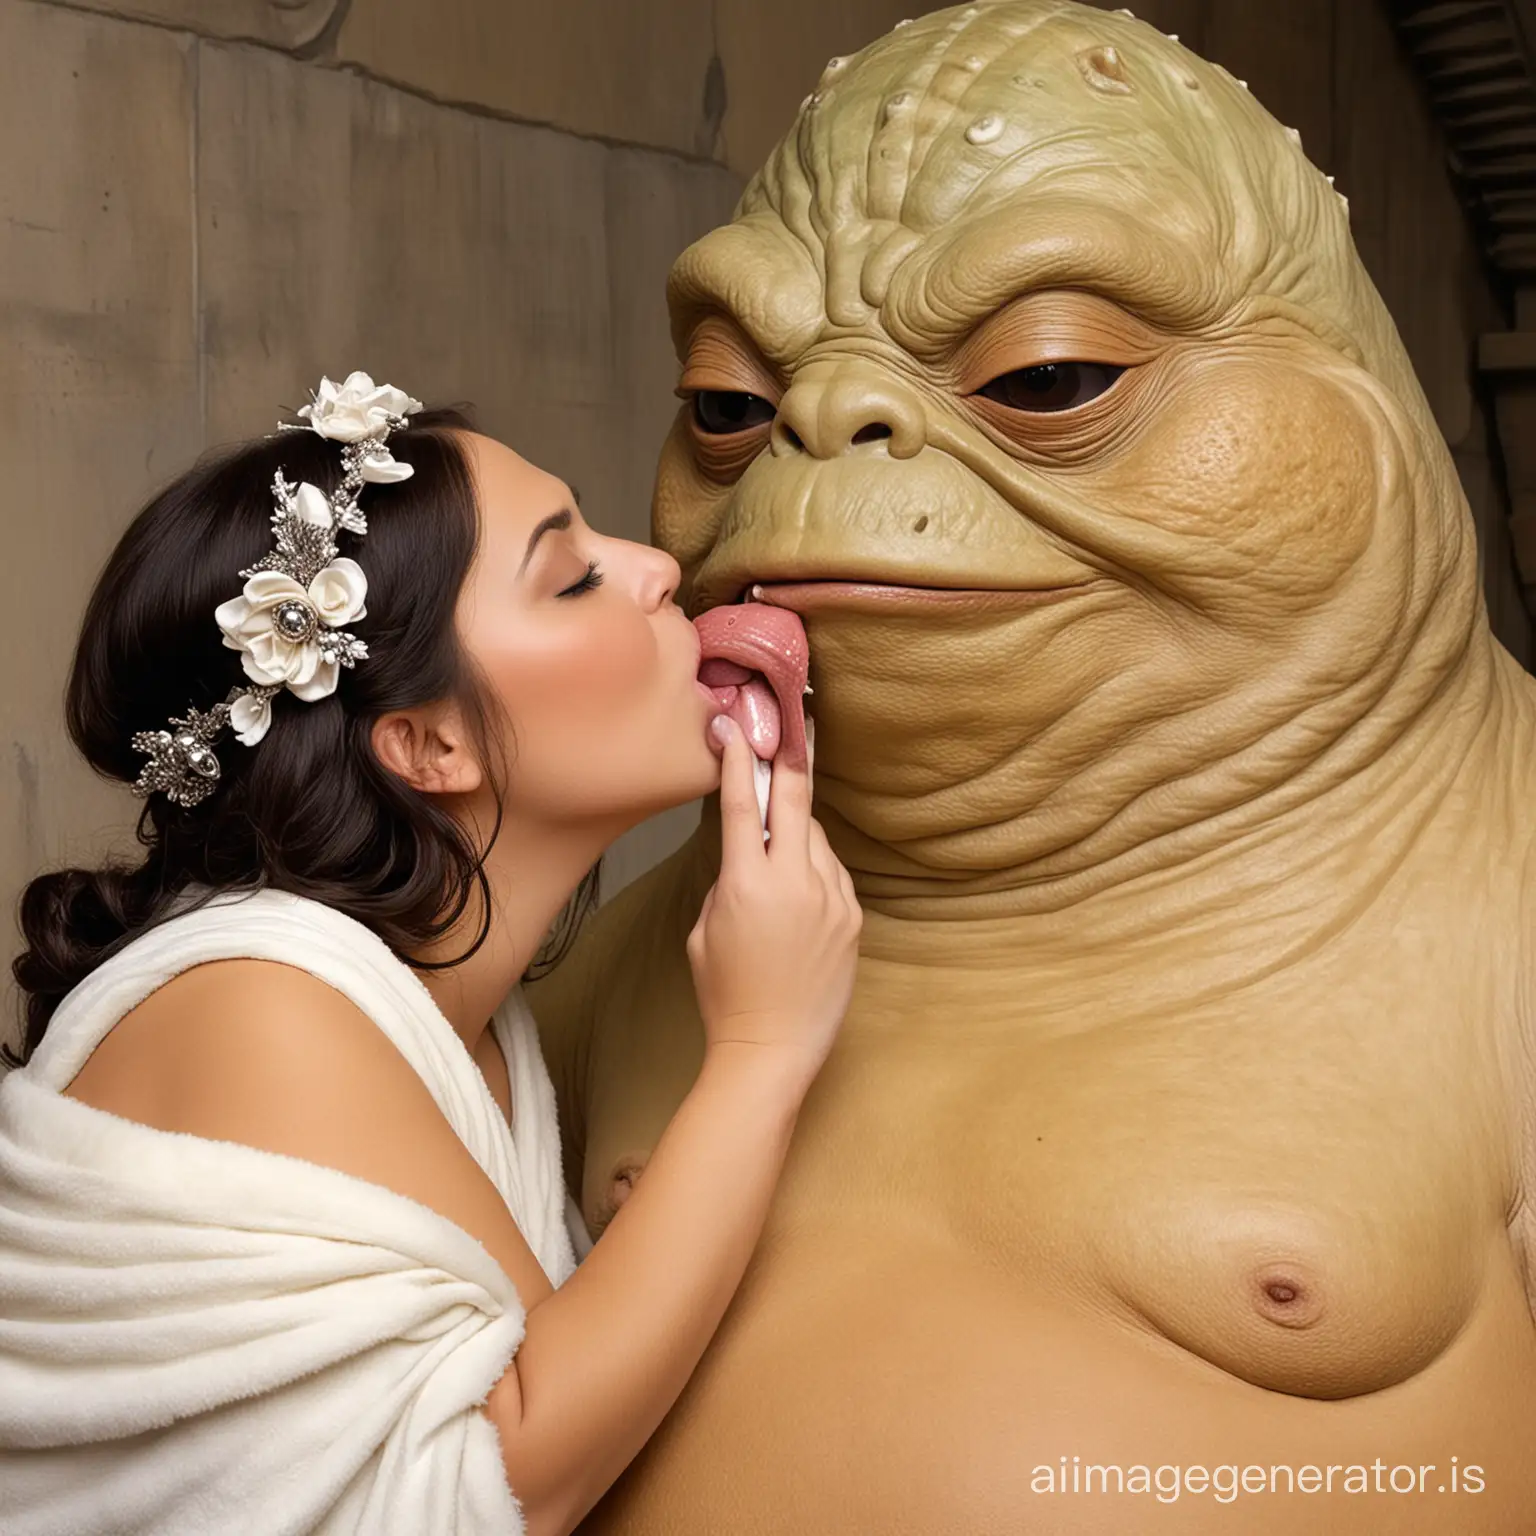 Jabba the Hutt licks Eskimo princess